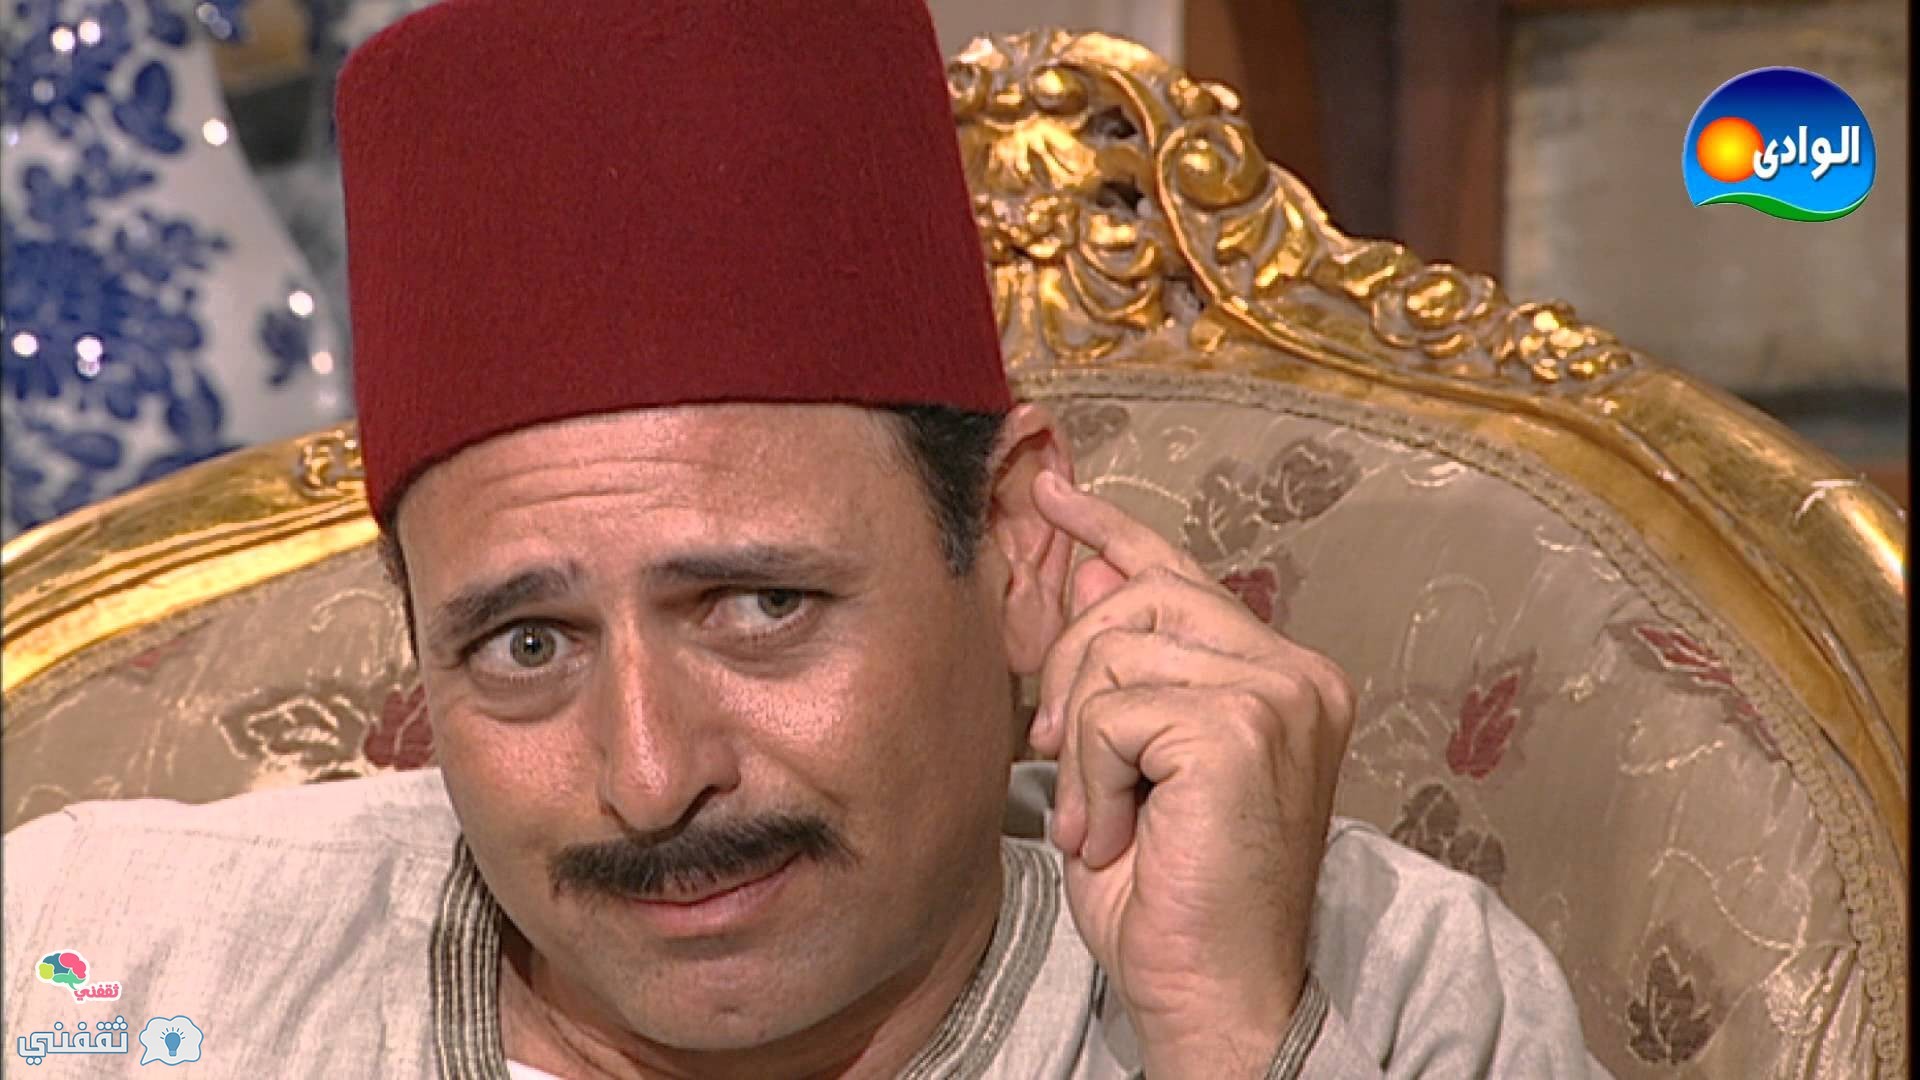 عاجل : وفاة الفنان القدير ممدوح عبد العليم وذالك اثر أزمة قلبية عن عمر 60 عاما